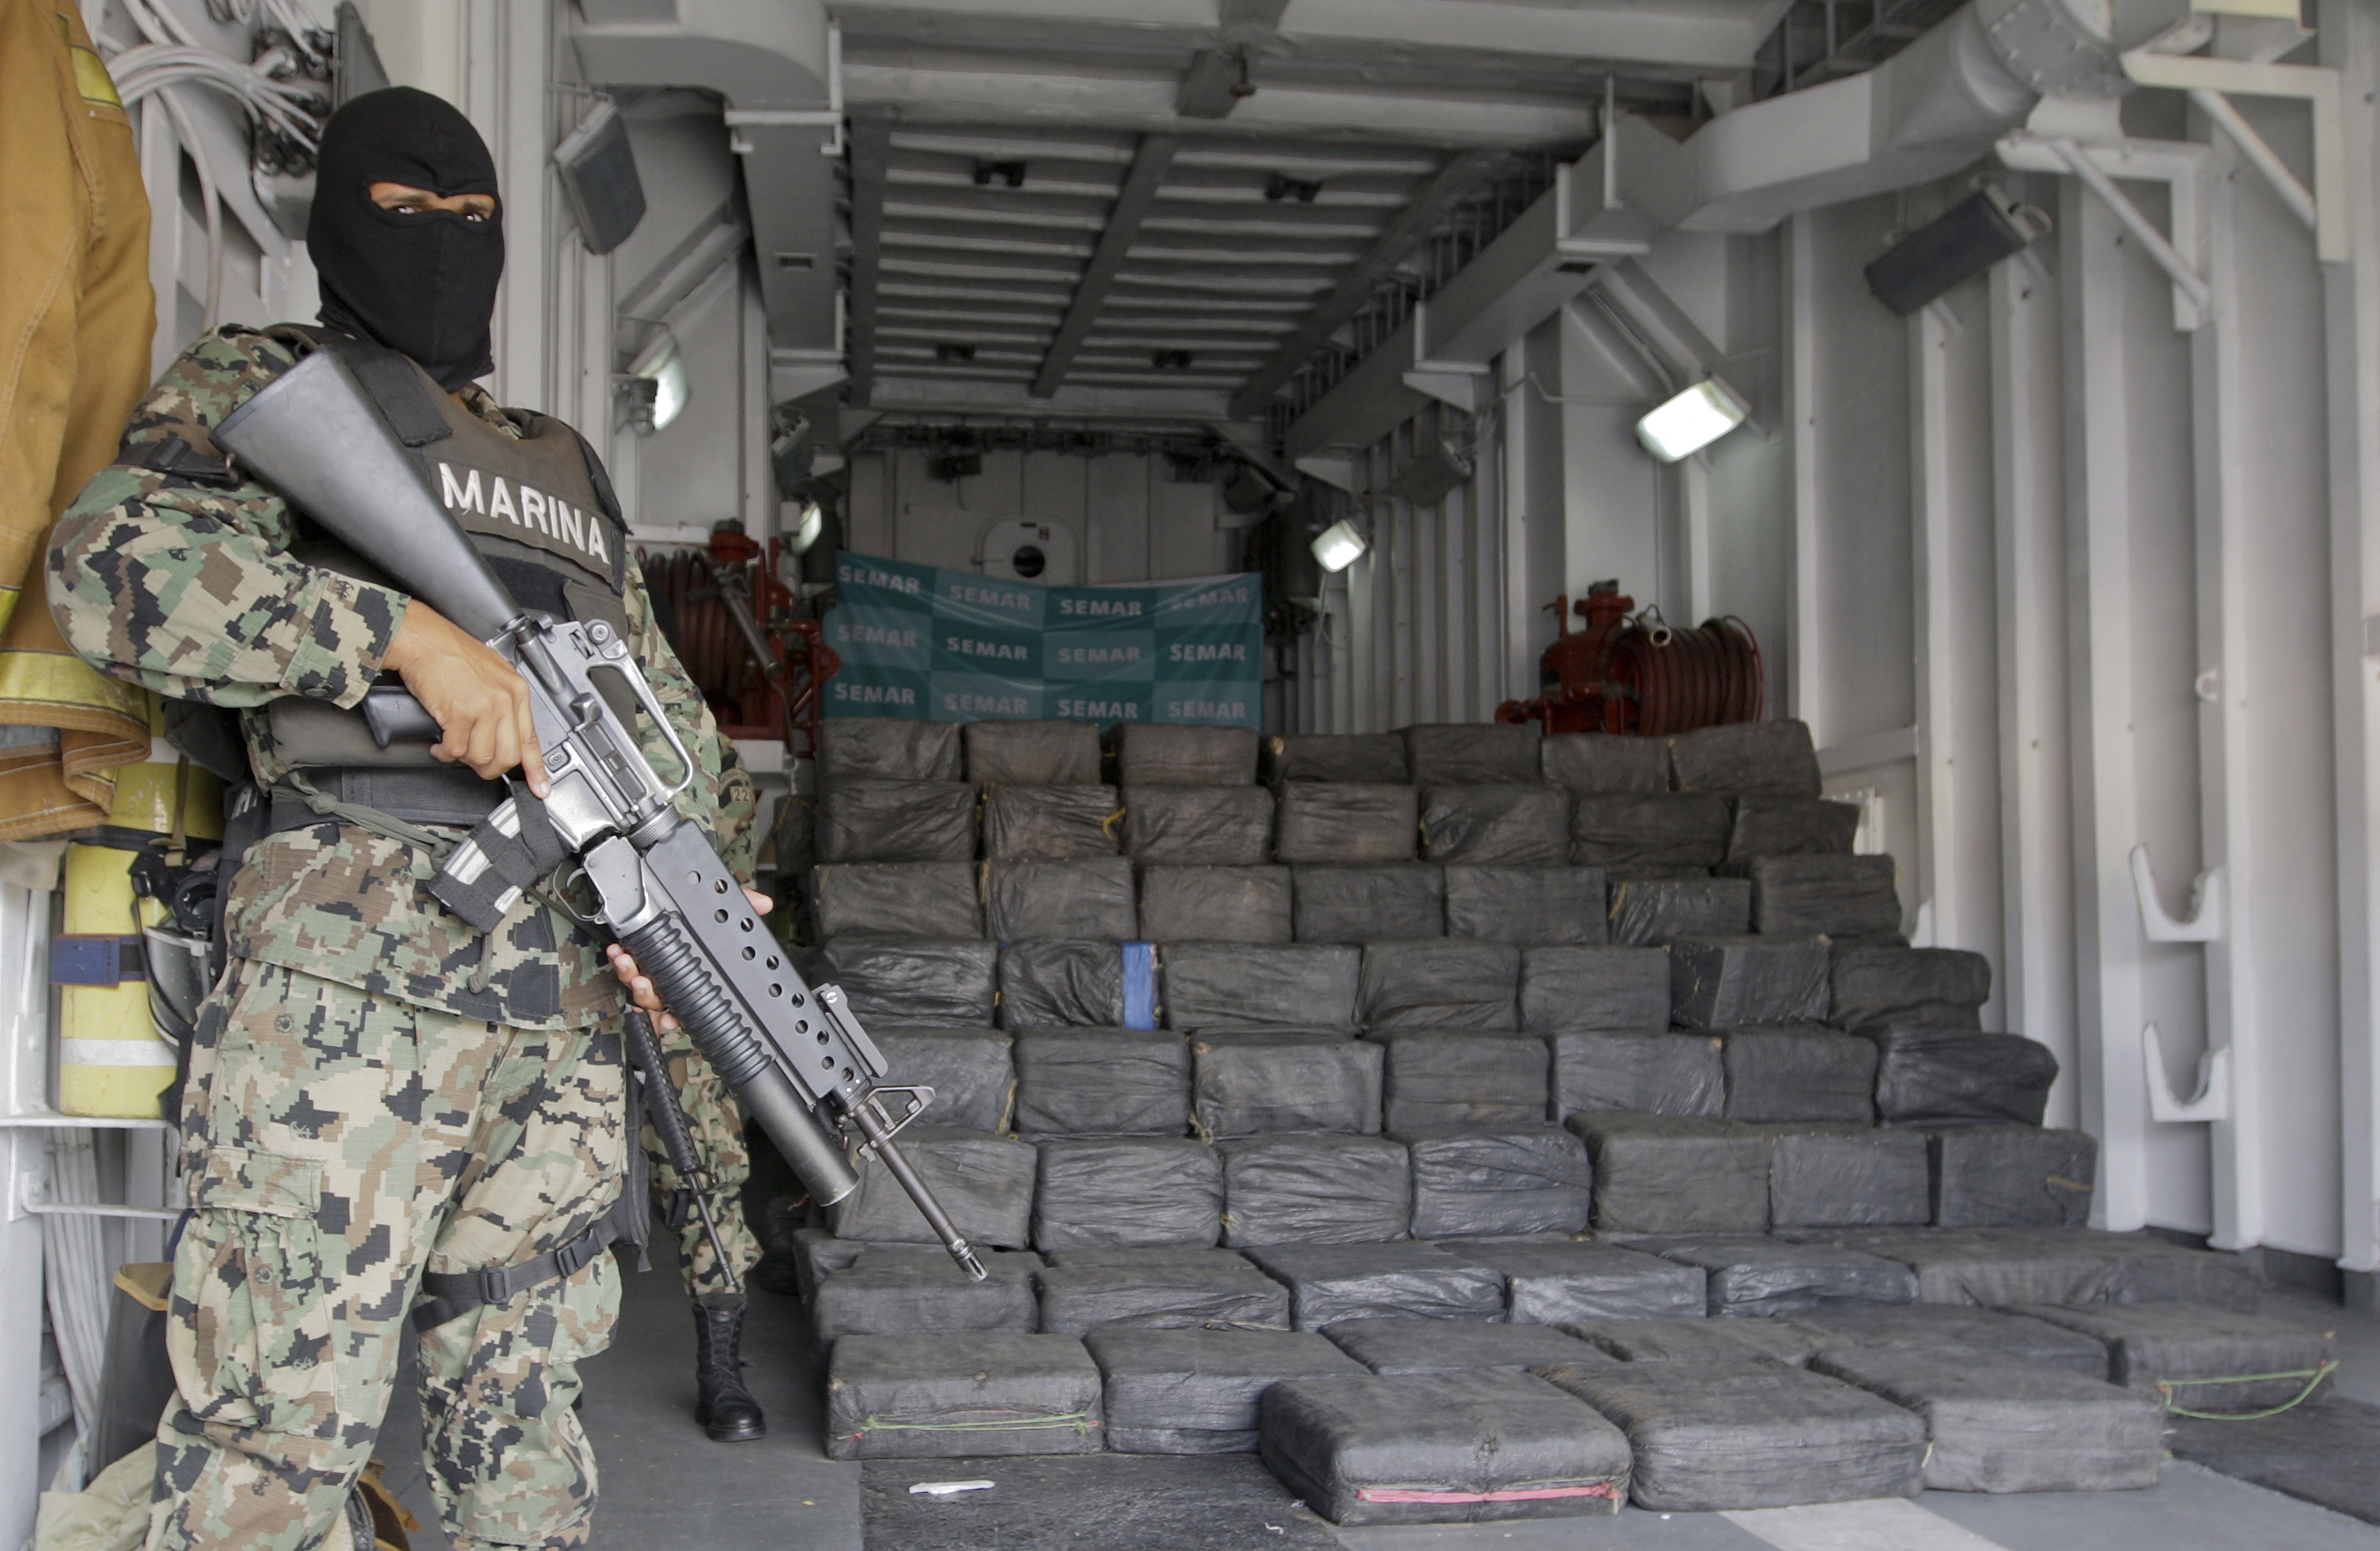  Cocaina purissima scoperta in un container proveniente dal Paraguay al Porto di Gioia Tauro